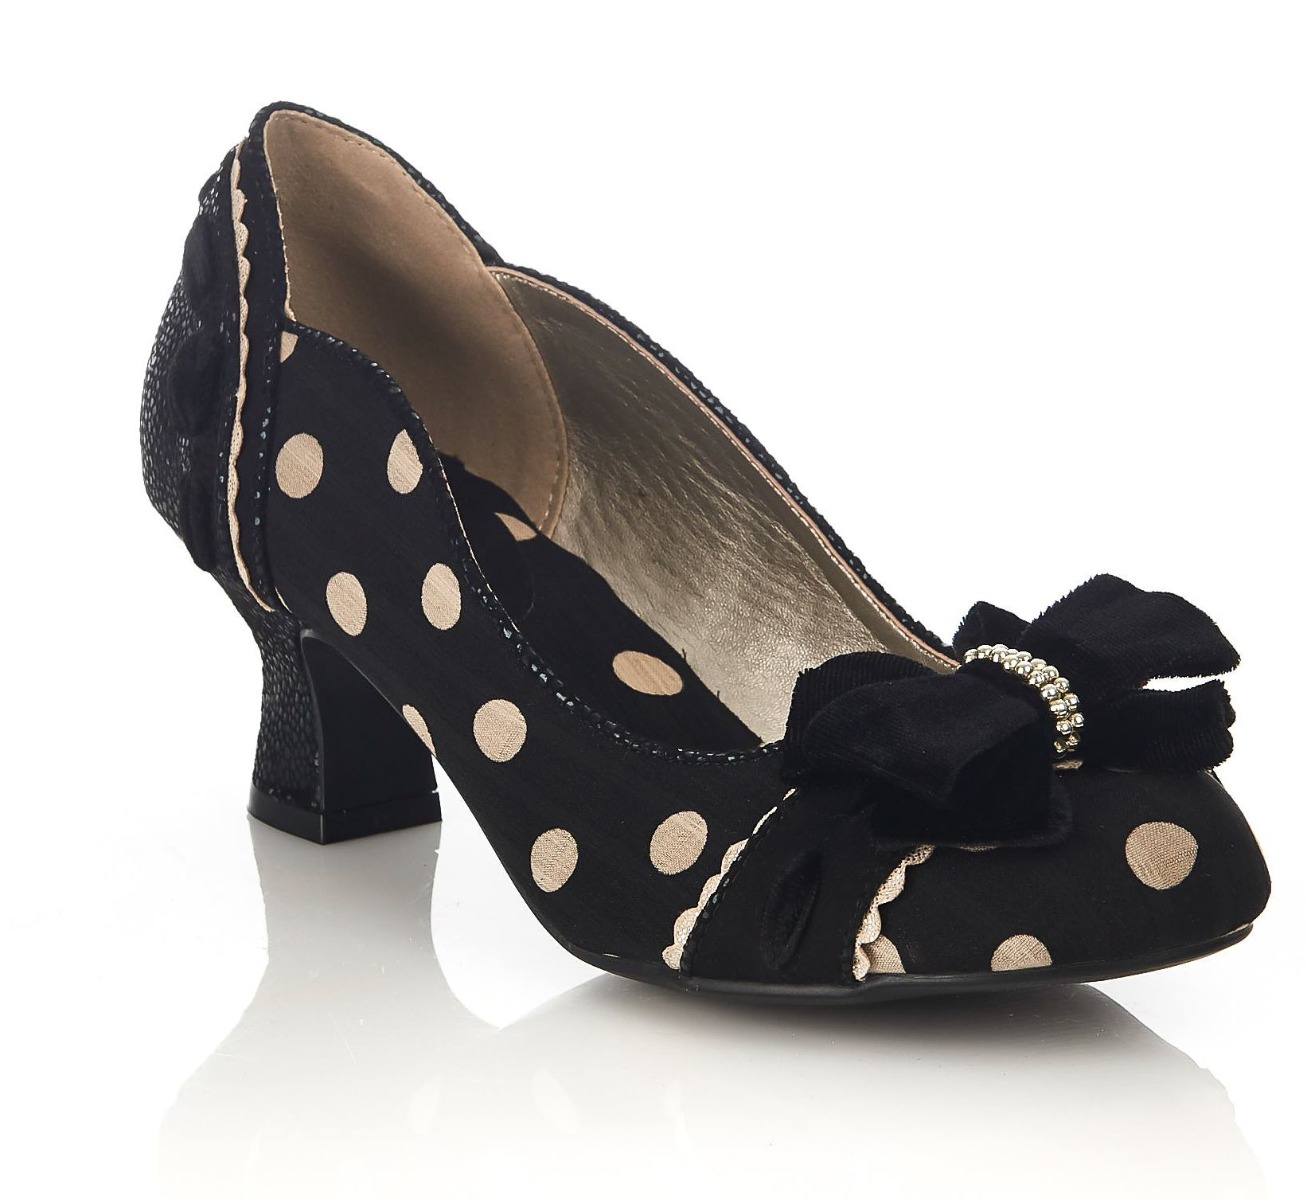 rs09220bsb_chaussures-escarpins-pin-up-retro-50-s-glam-chic-rhea-noir